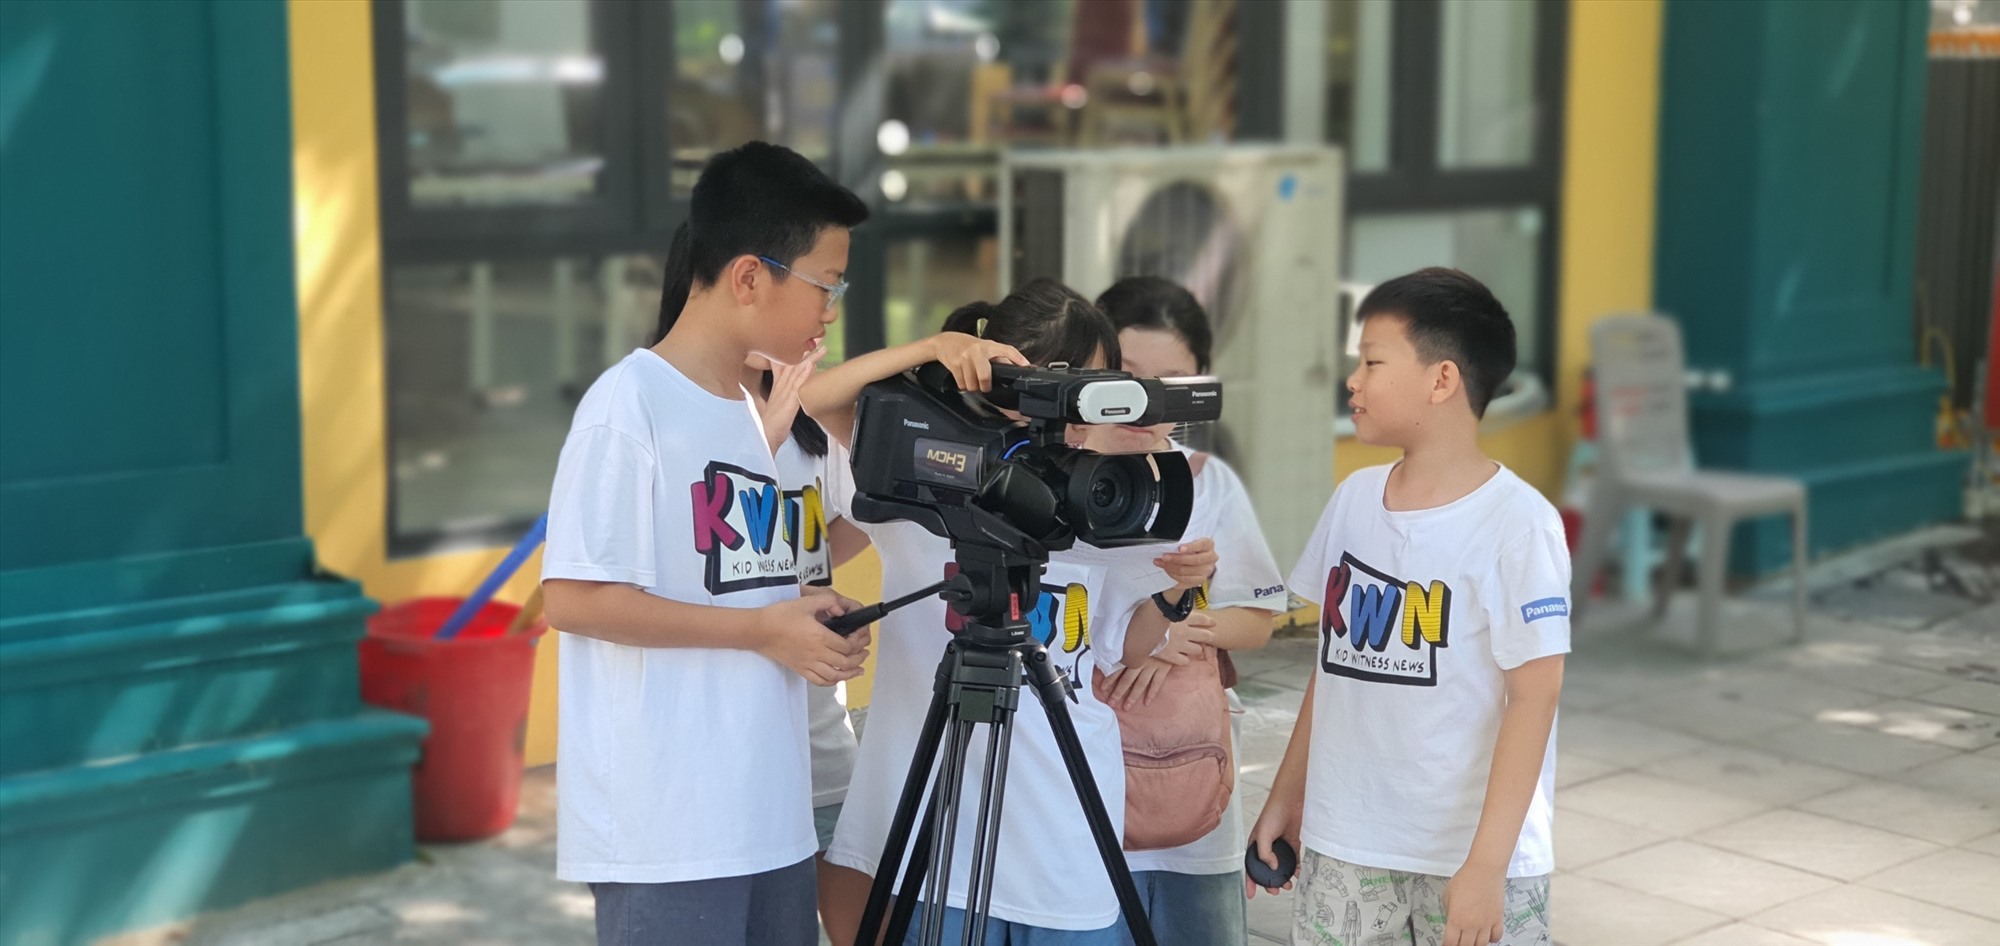 Chương trình “Qua ống kính trẻ thơ” đã mở rộng tiếp cận tới nhiều trường học và học sinh địa phương, khi được triển khai như một hoạt động của khuôn khổ “Panasonic vì Trường học Bền vững”. Ảnh: BTC